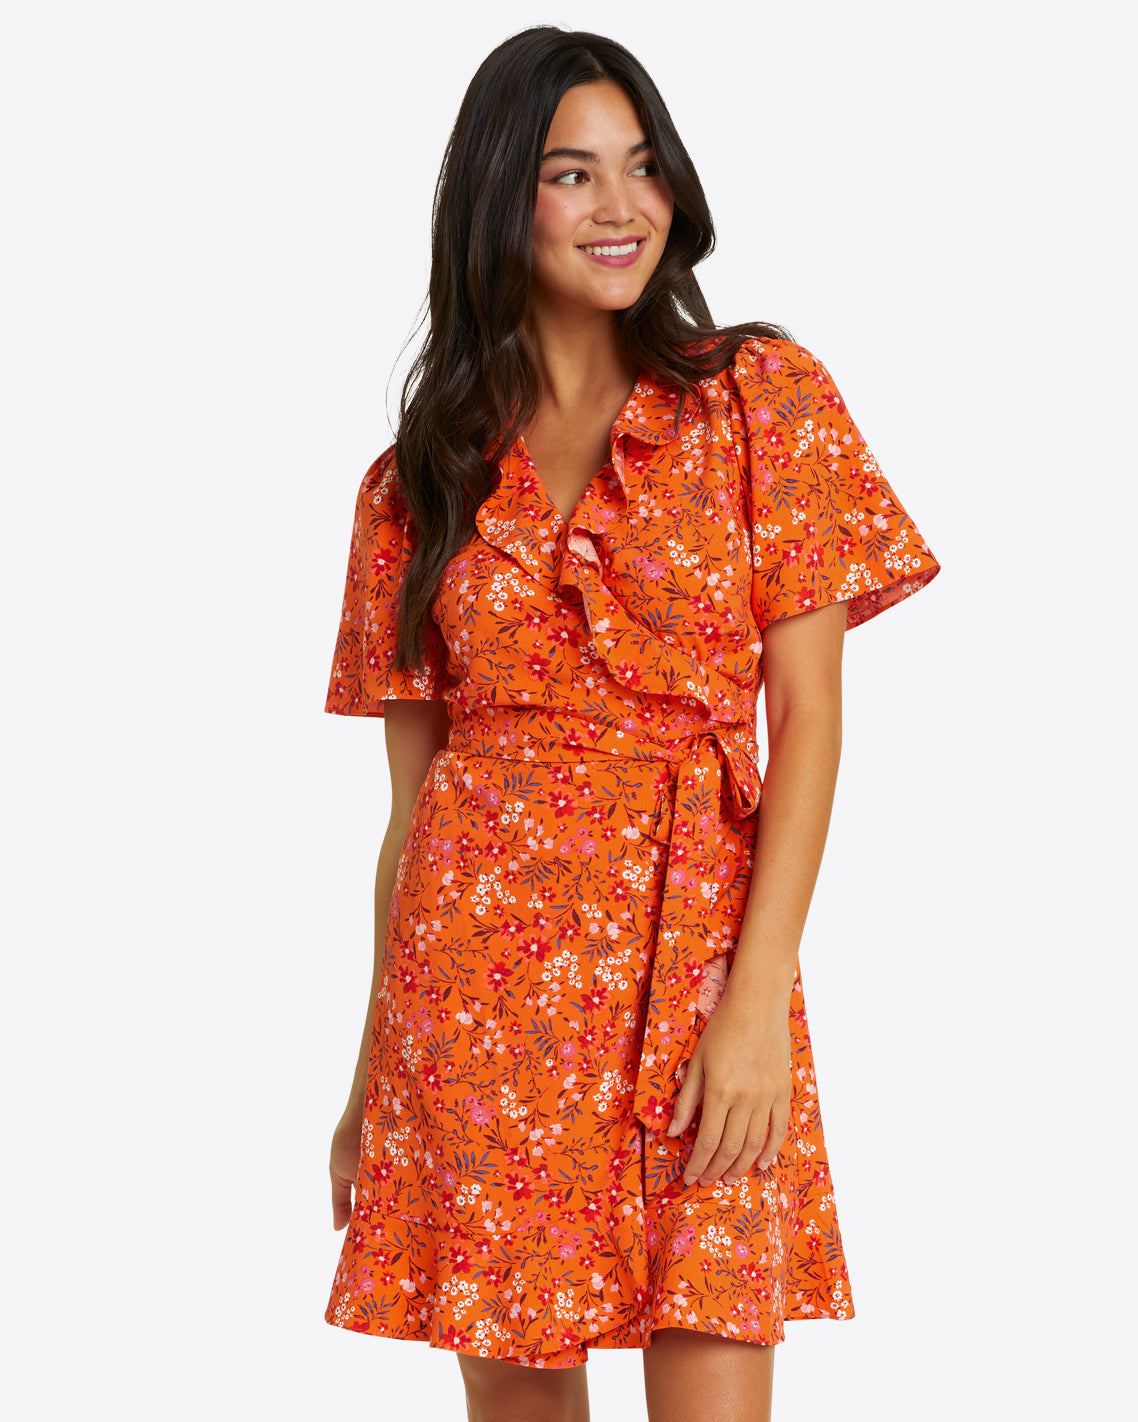 Reba Wrap Dress in Apricot Pansy Floral